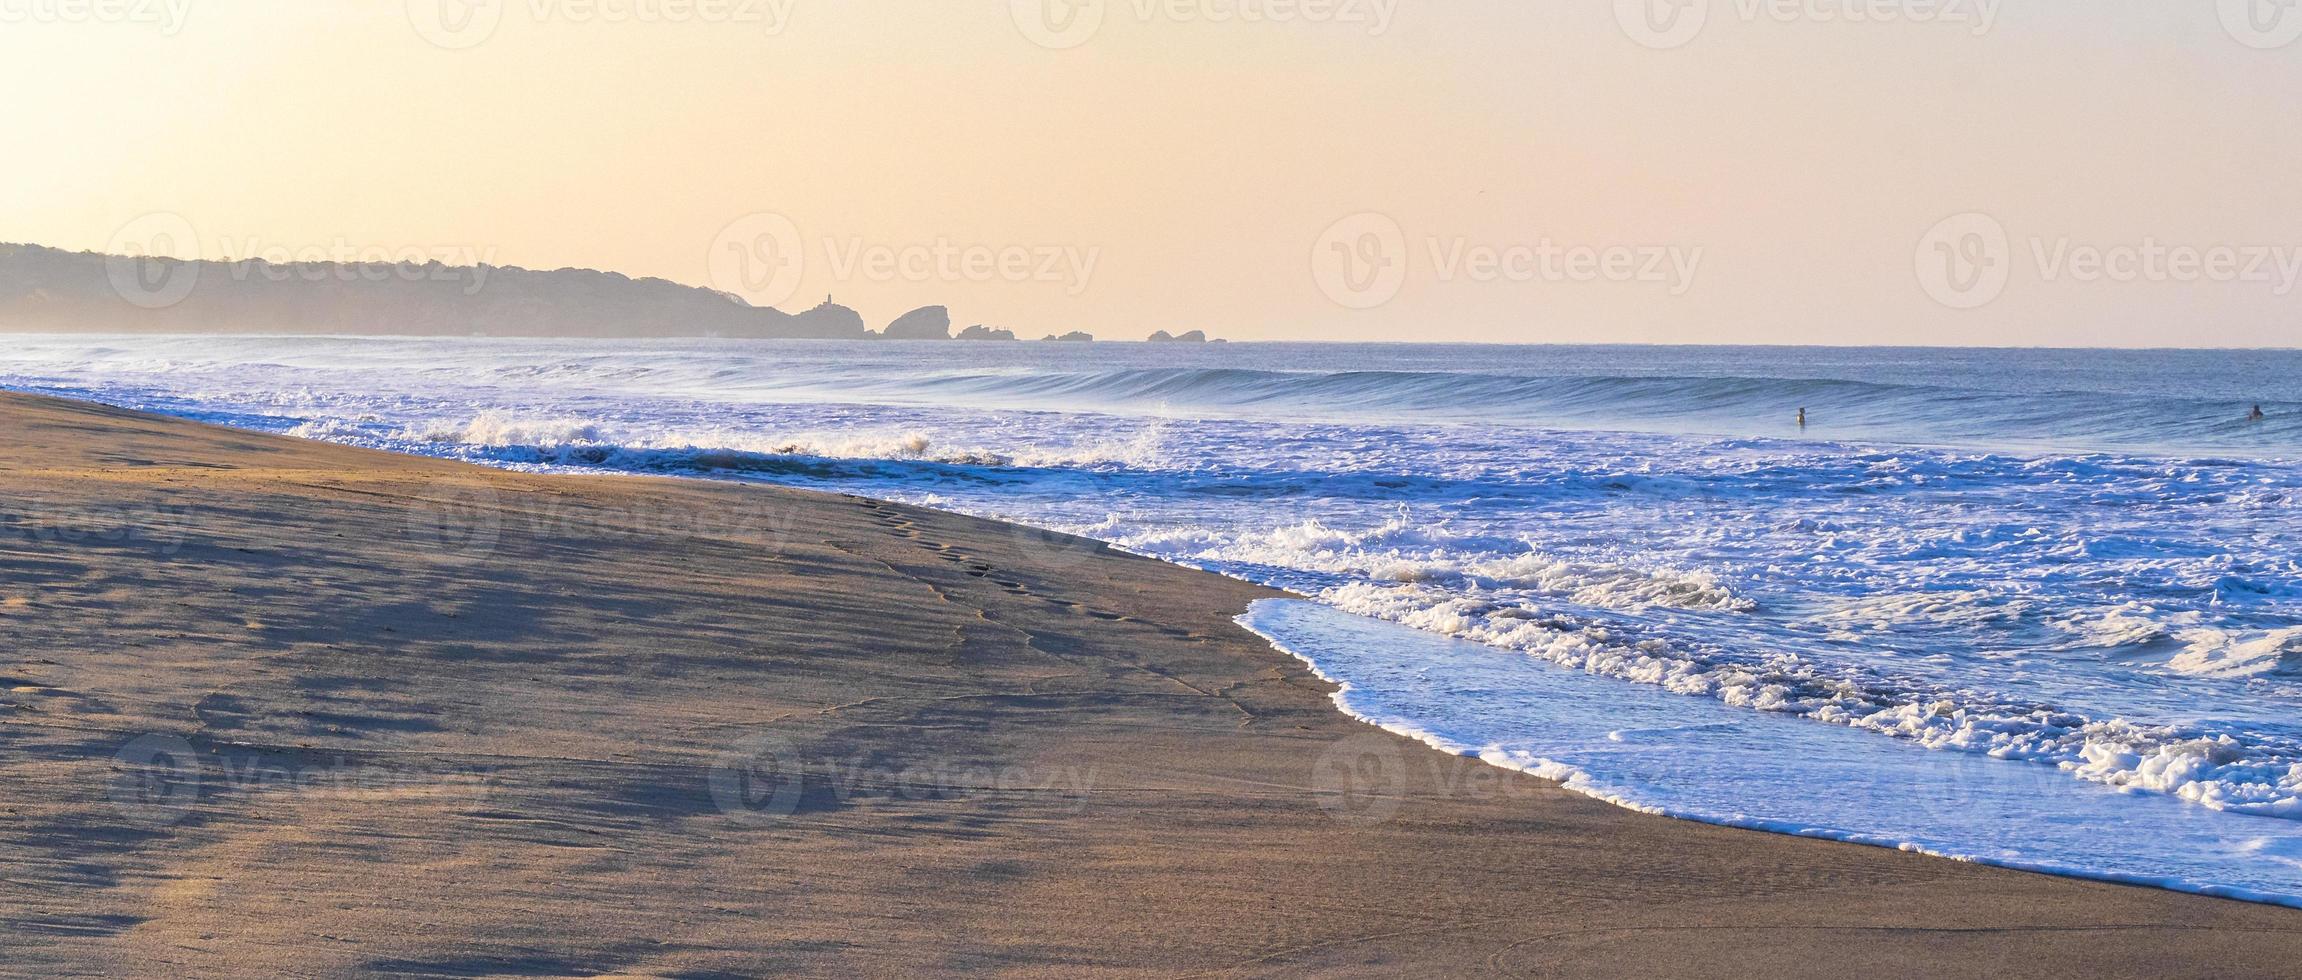 estremamente enorme grande surfer onde spiaggia la punta zicatela Messico. foto